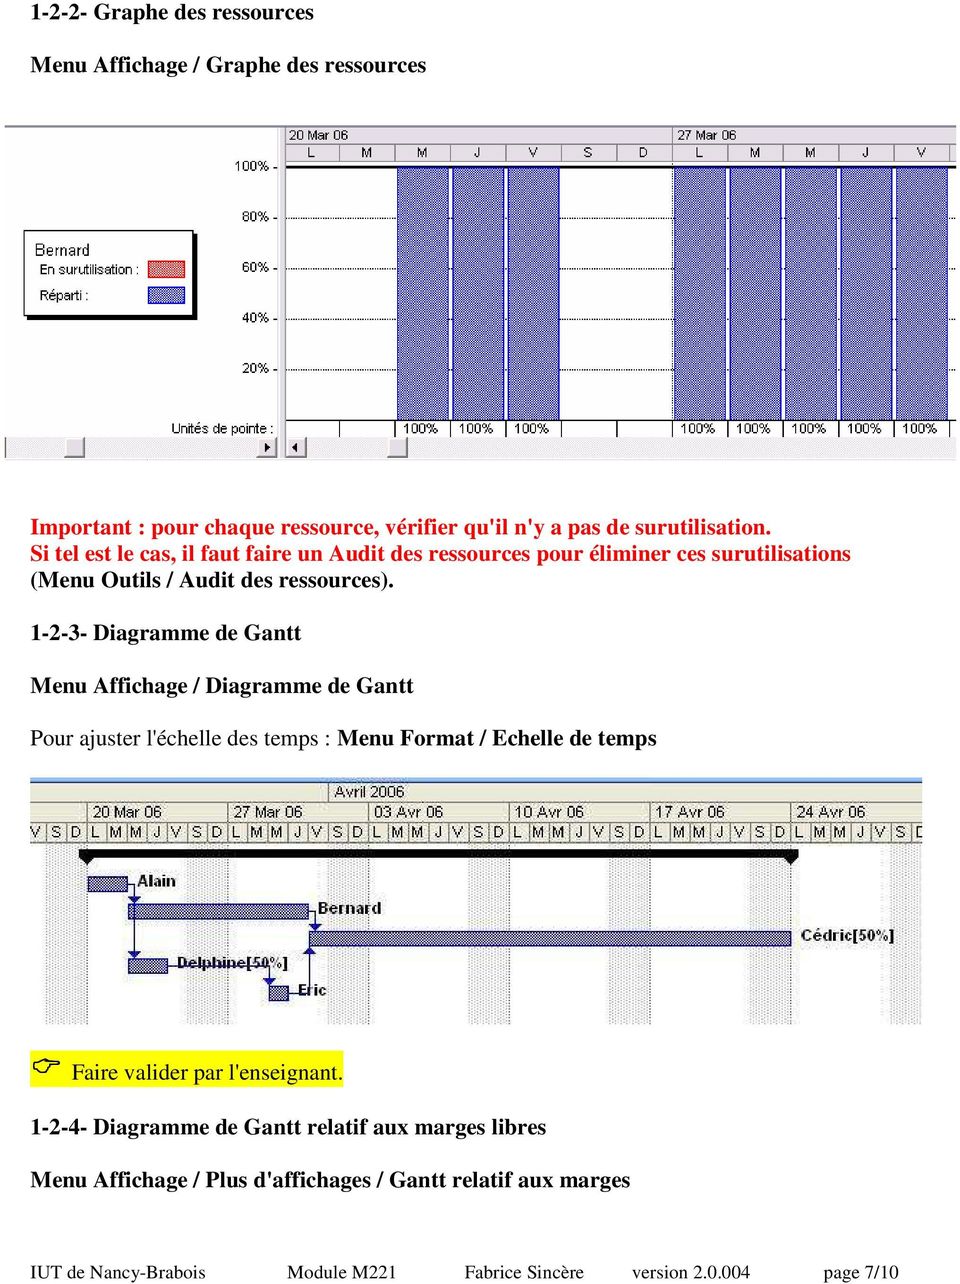 1-2-3- Diagramme de Gantt Menu Affichage / Diagramme de Gantt Pour ajuster l'échelle des temps : Menu Format / Echelle de temps Faire valider par